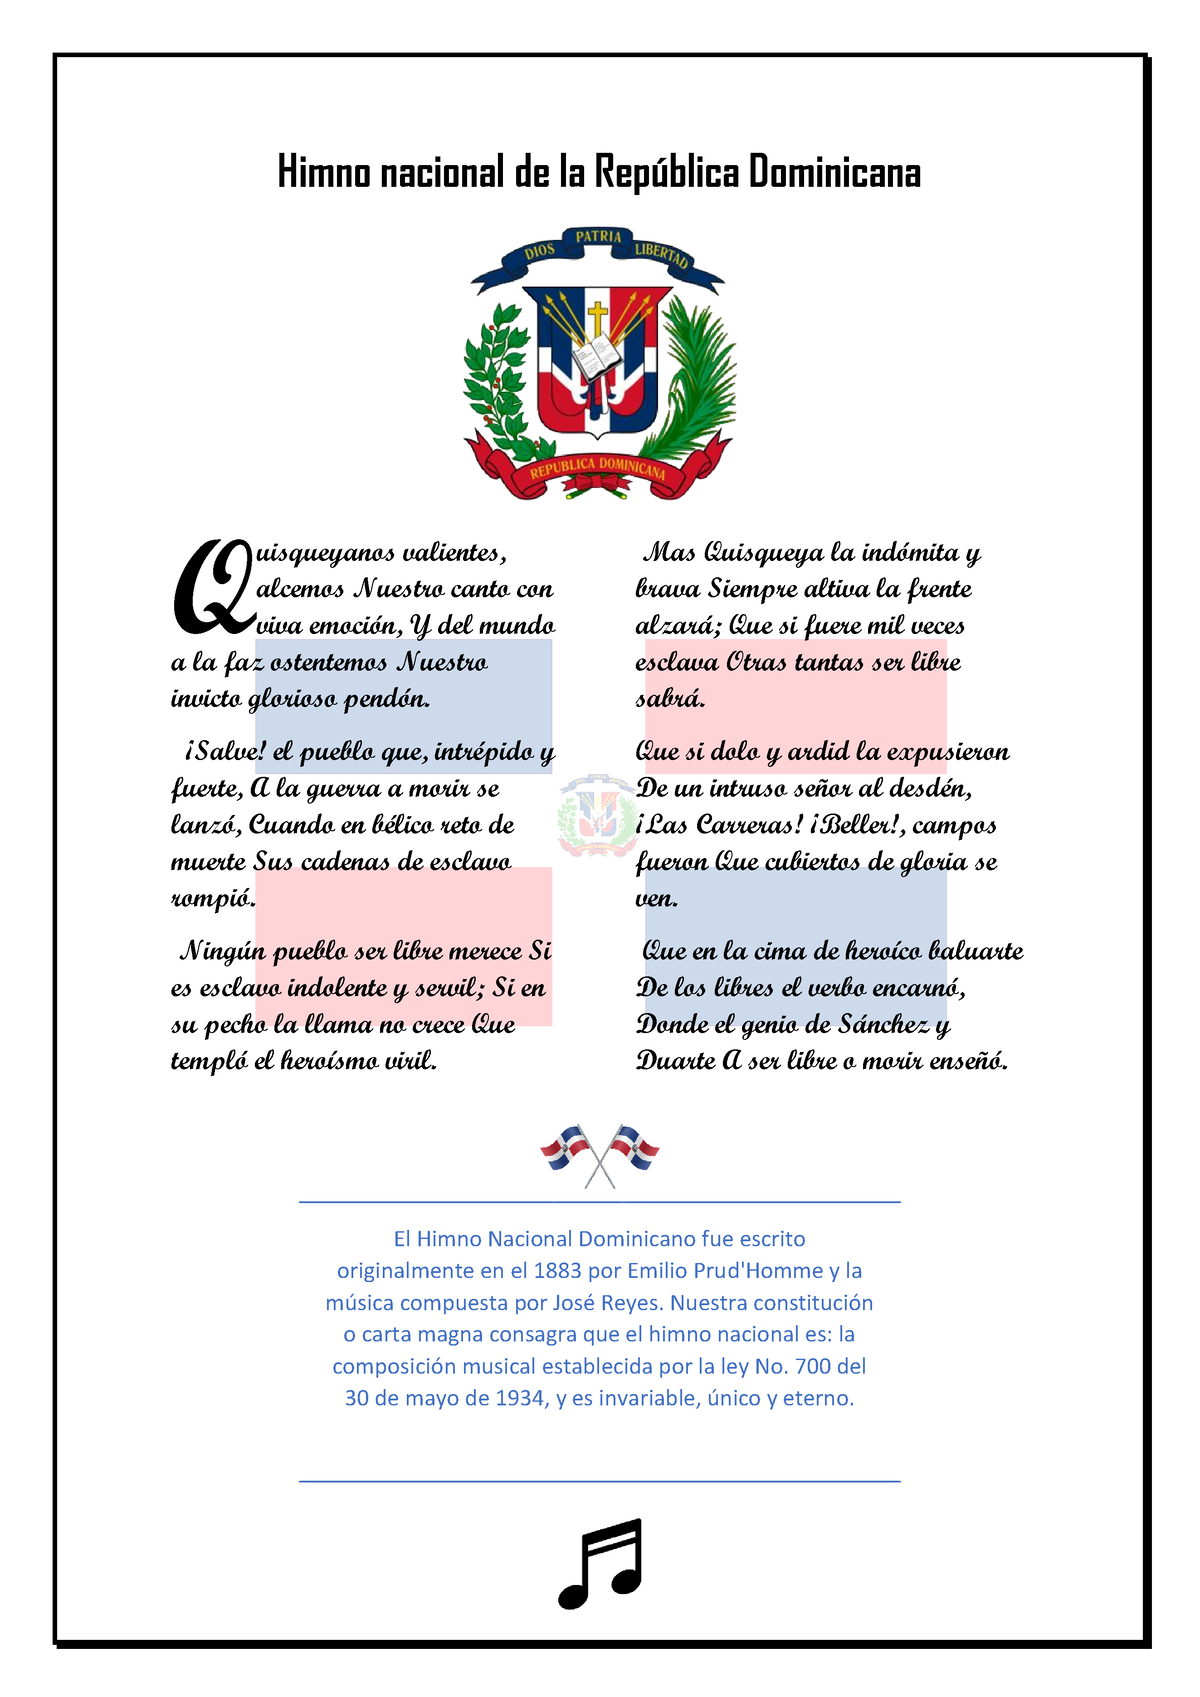 Himno Nacional De La República Dominicana Tarea 32 Creando Un Documento En Estilo Periodístico 7131